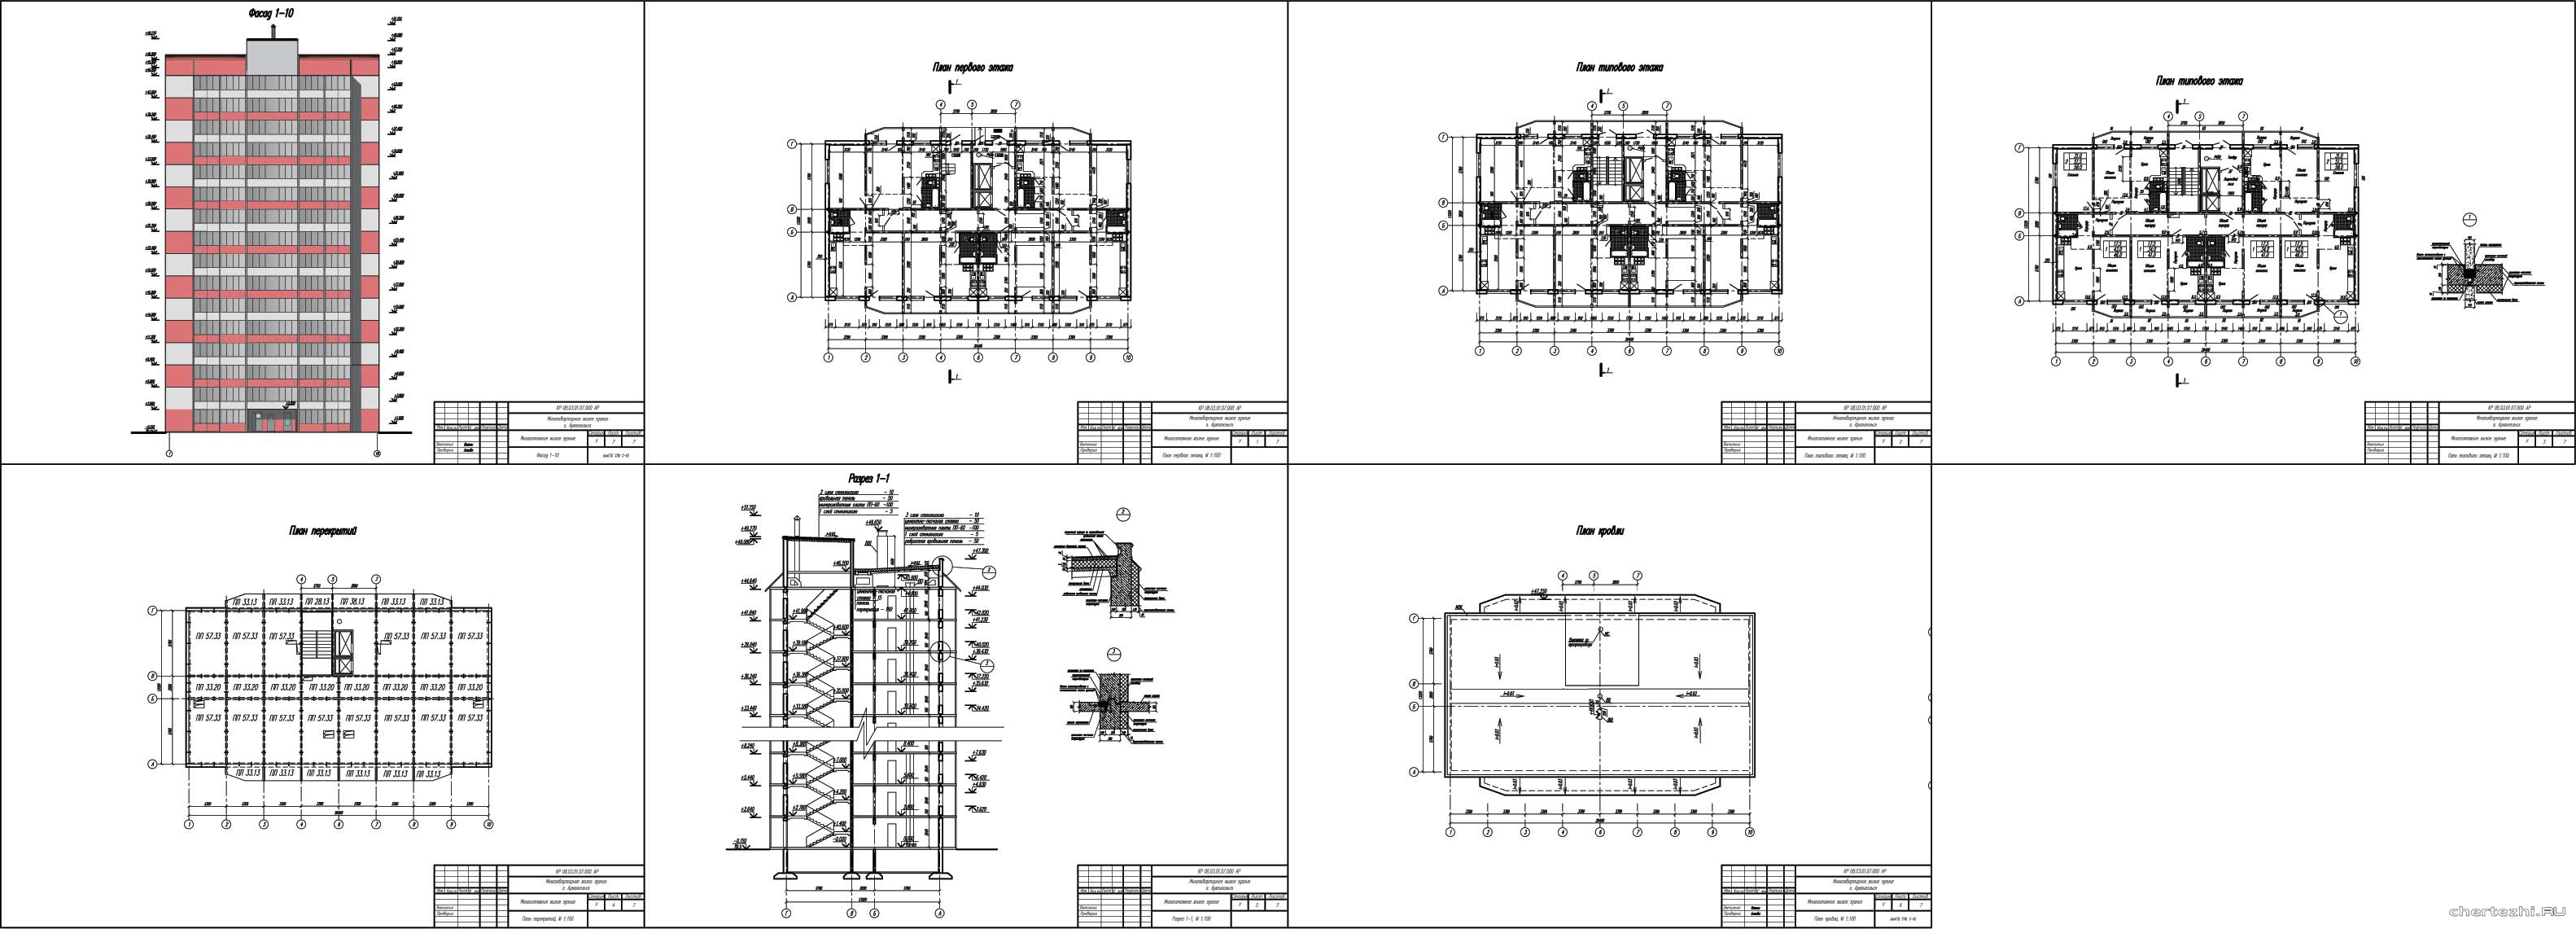 Курсовой проект - 16 - ти этажный жилой дом на 96 квартир 26,40 х 13,52 м в г. Архангельск